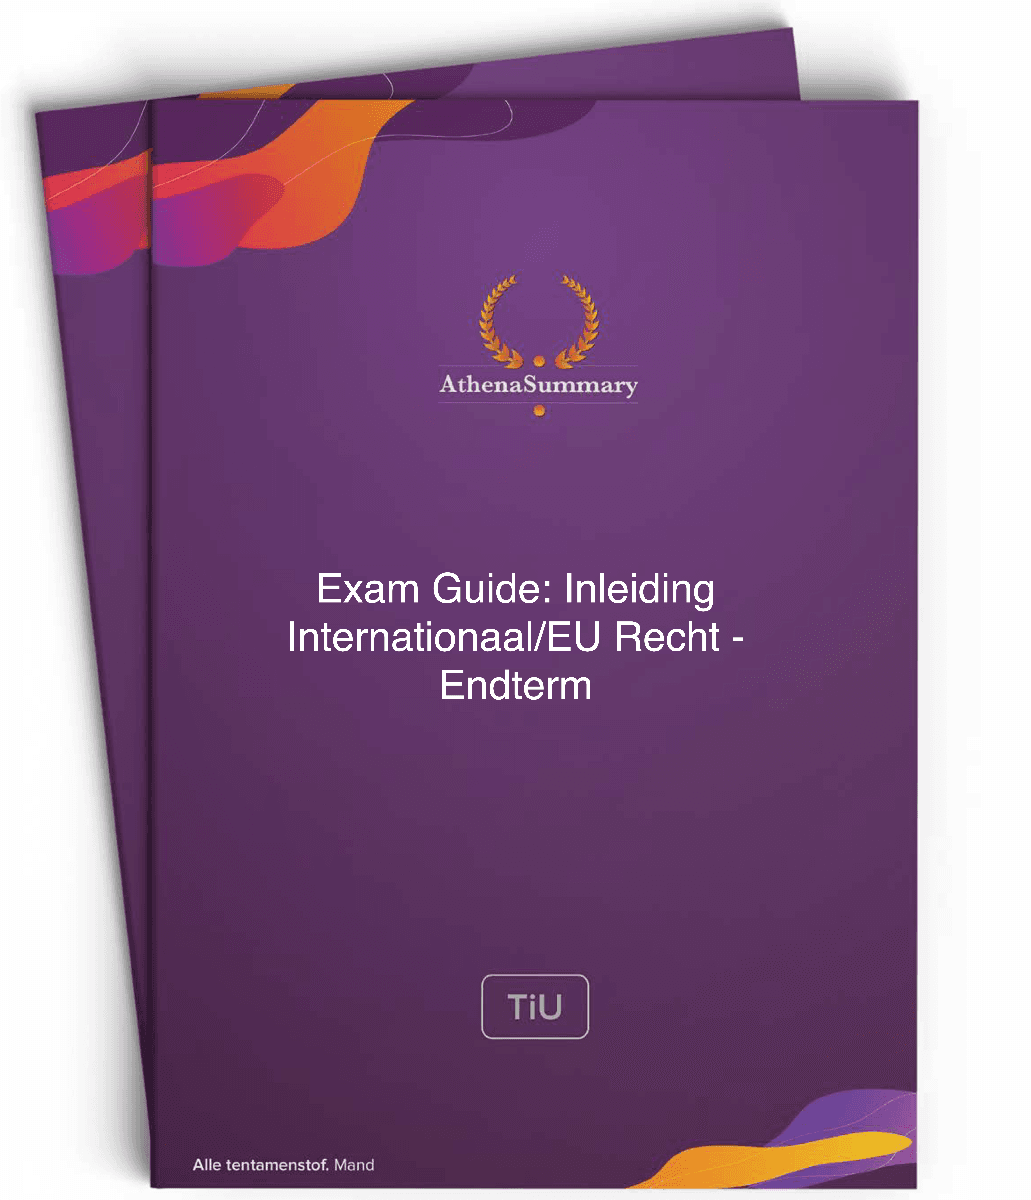 Exam Guide Inleiding Internationaal/EU Recht - Endterm